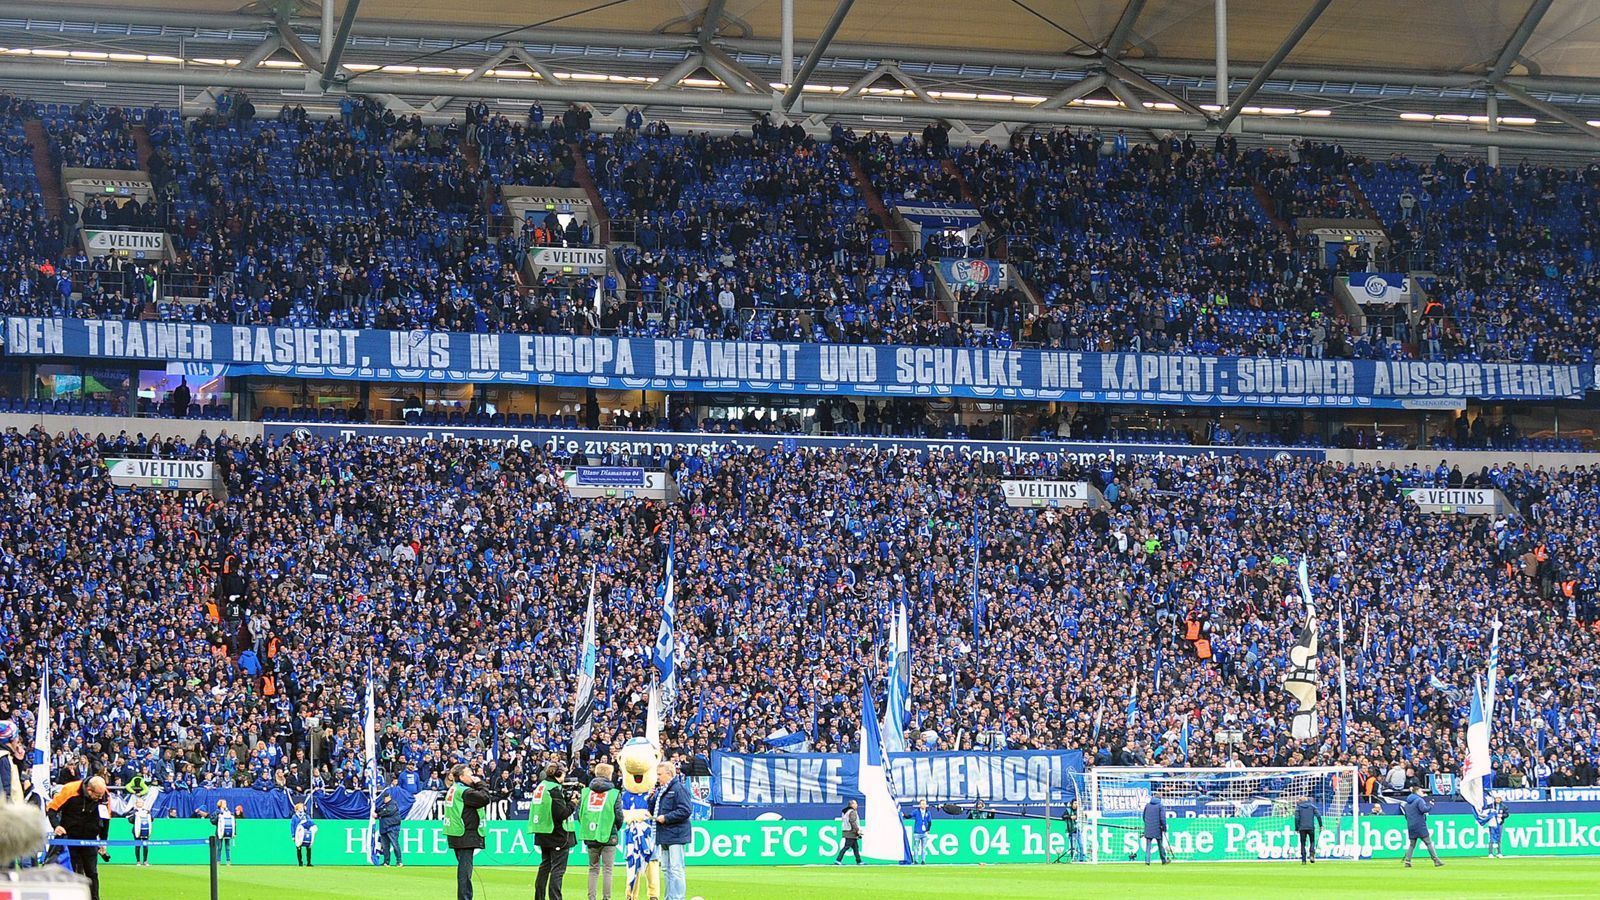 
                <strong>FC Schalke 04: So lief Spiel 1 nach Tedesco</strong><br>
                Bevor es losging, betrieben die Schalker Fans erst einmal verbale Frustbewältigung nach der 0:7-Klatsche zuletzt in der Champions League bei Manchester City. Die Botschaft ist mehr als deutlich und geht ganz klar an die Adresse der Spieler, die sich vom englischen Meister schlichtweg auseinander nehmen ließen.
              